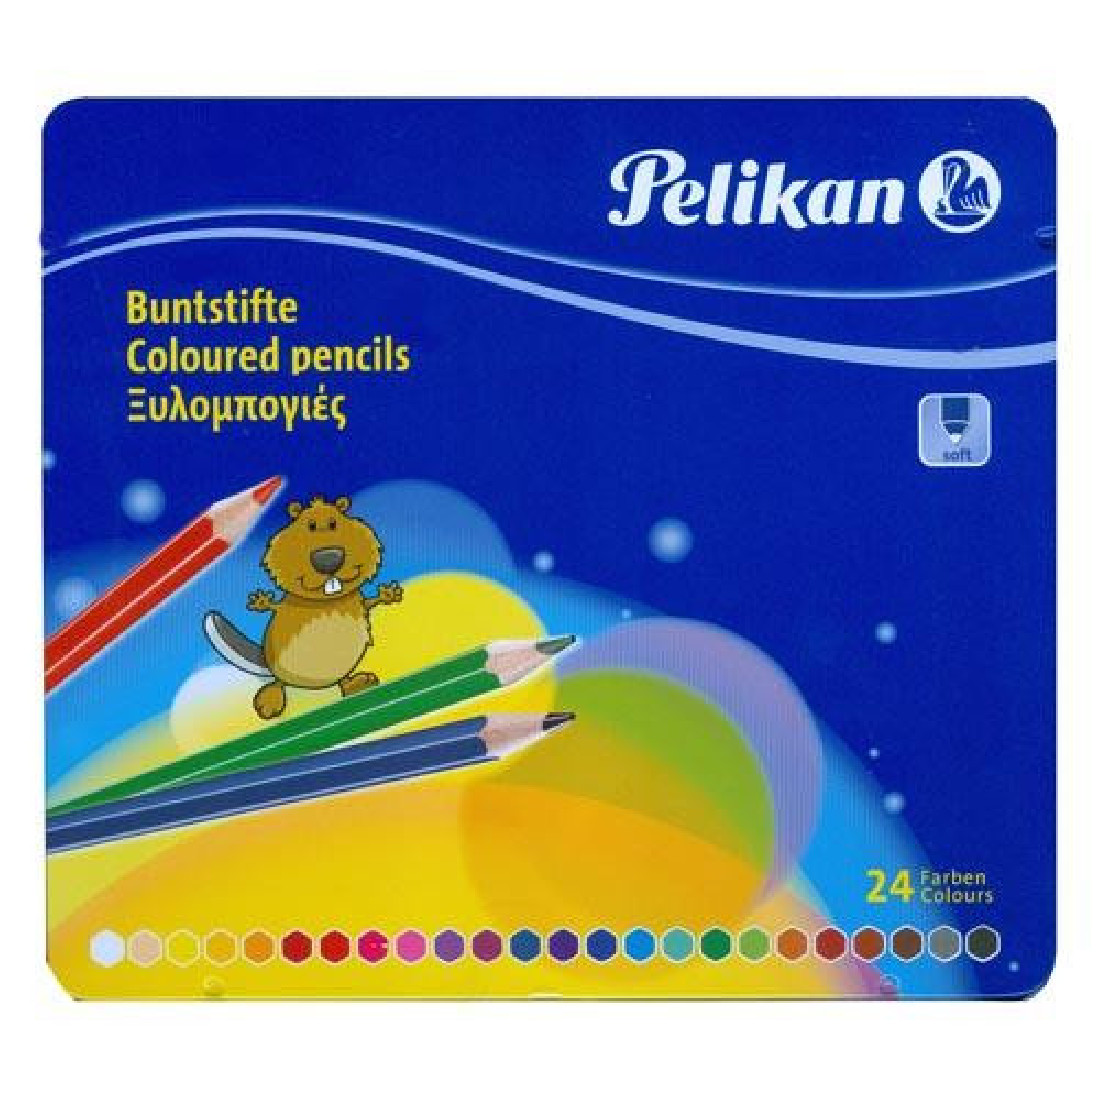 Pelikan Buntstifte  Coloured Pencils 24 pieces in metallic case 297804